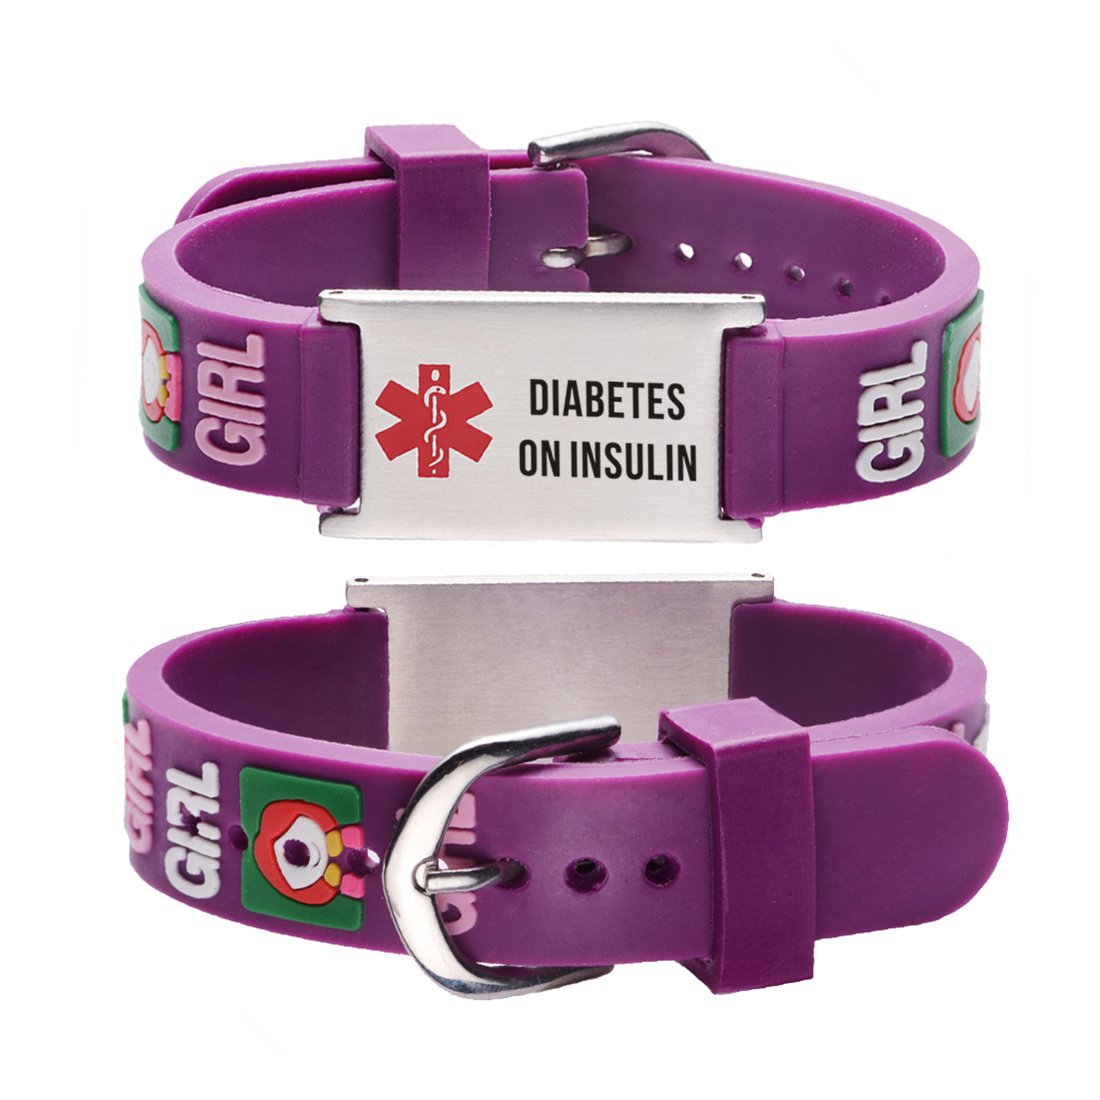 Diabetes bracelets for kids-little girl